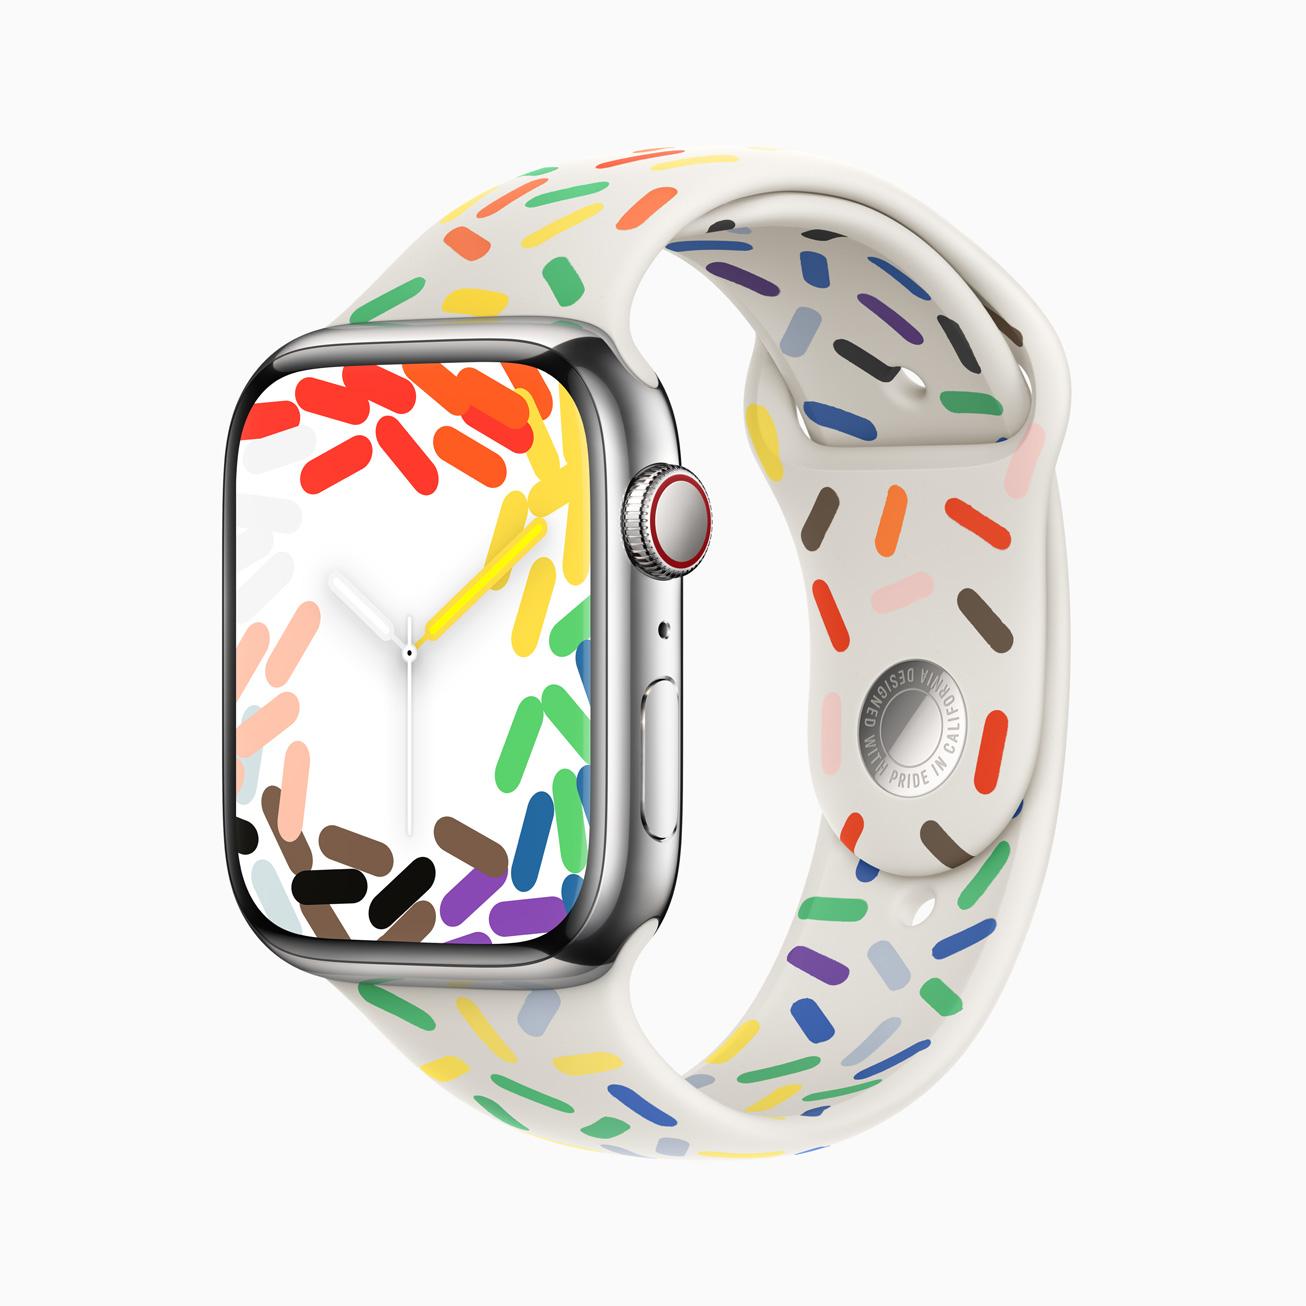 苹果持续力挺LGBTQ+ 推出全新Apple Watch Pride 运动型表带